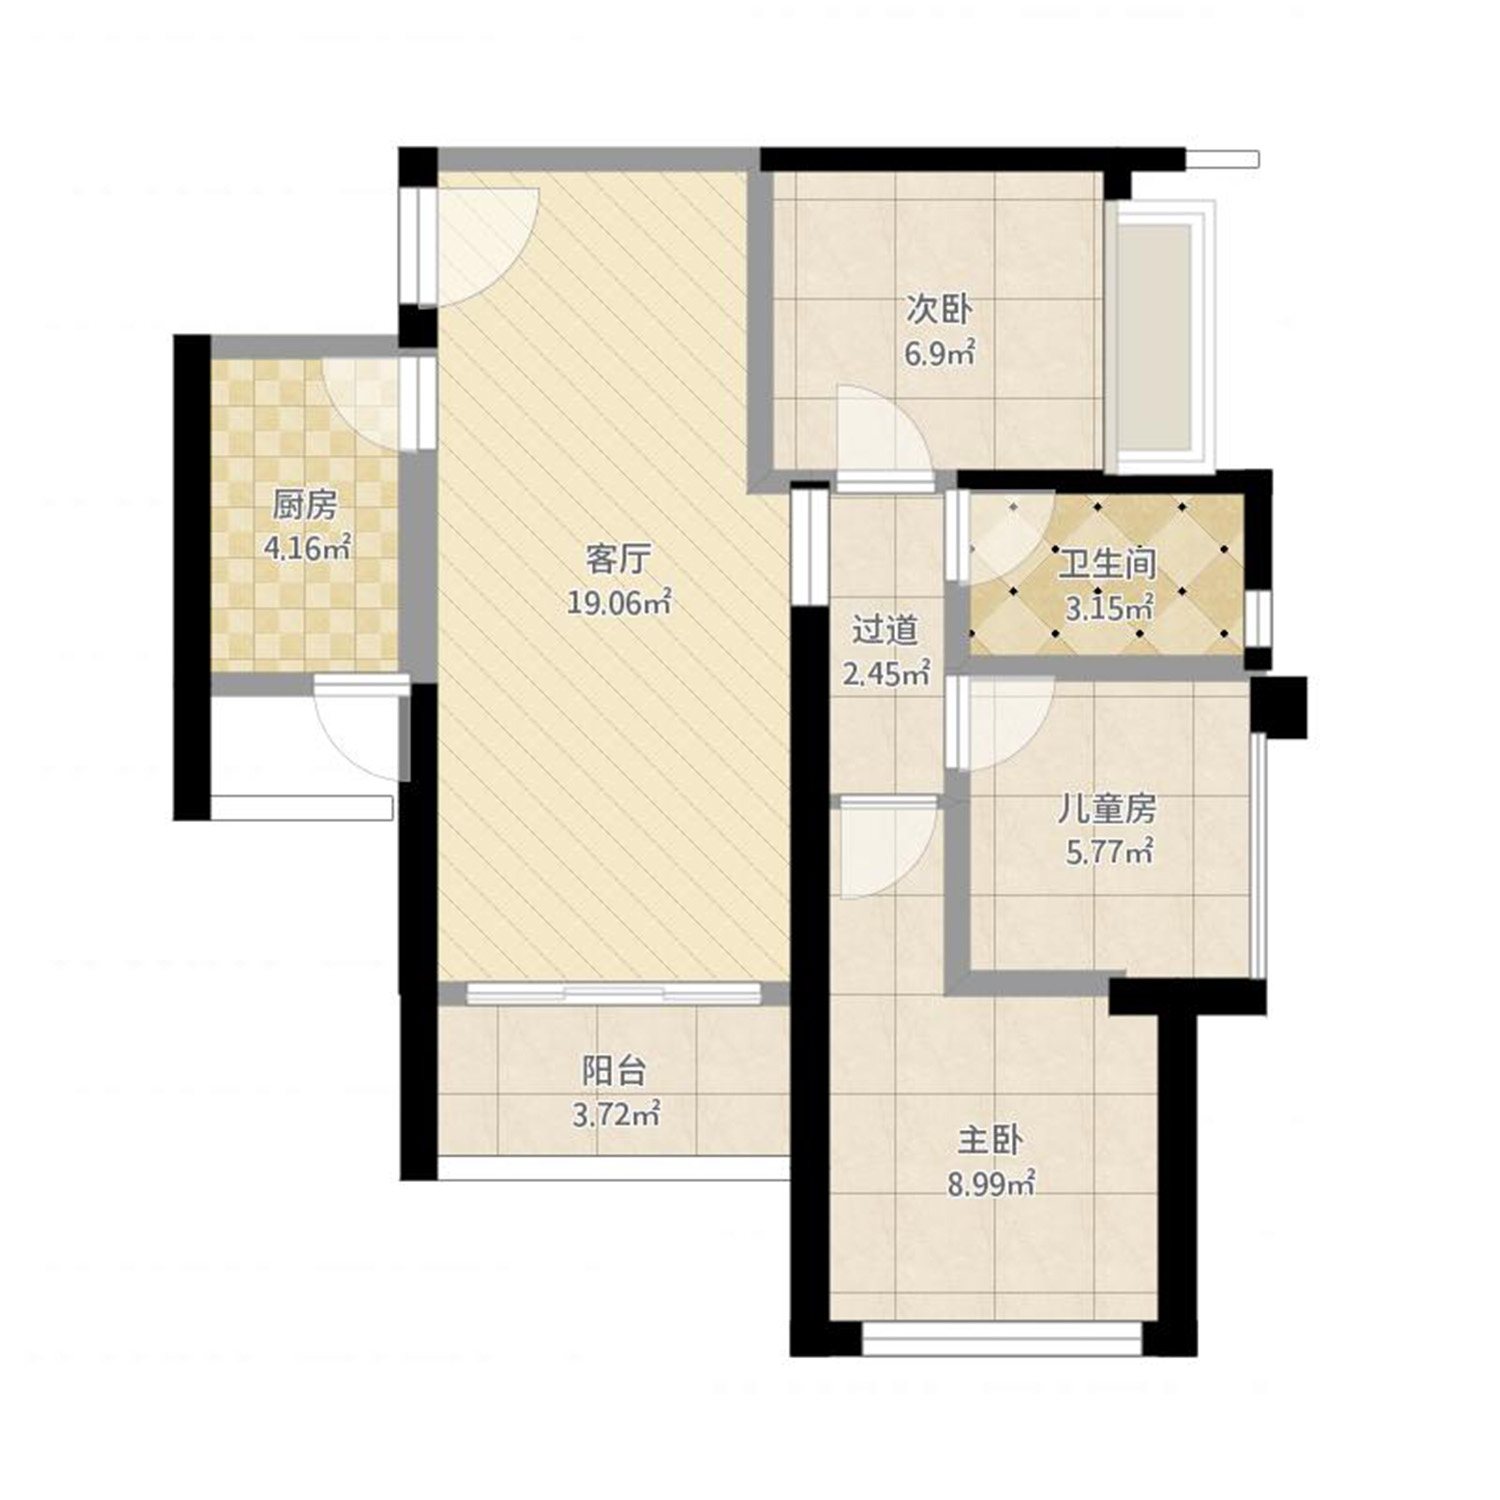 山西省晋中市榆次区 华美小区3室1厅1卫 98m²-v2户型图 - 小区户型图 -躺平设计家